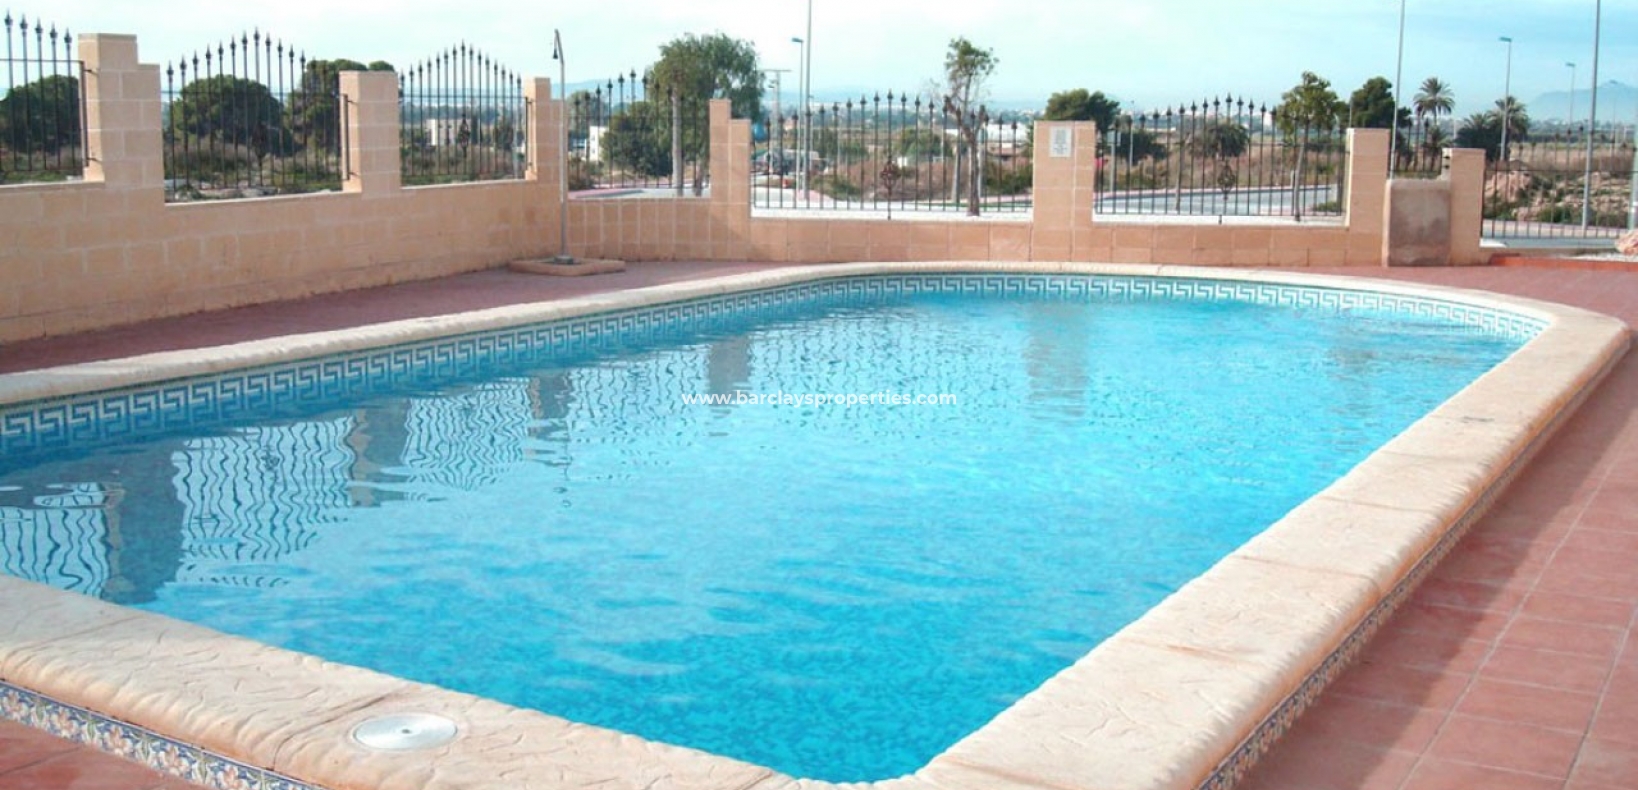 Gemeenschappelijk zwembad - Villa te koop met gemeenschappelijk zwembad Urb La Marina